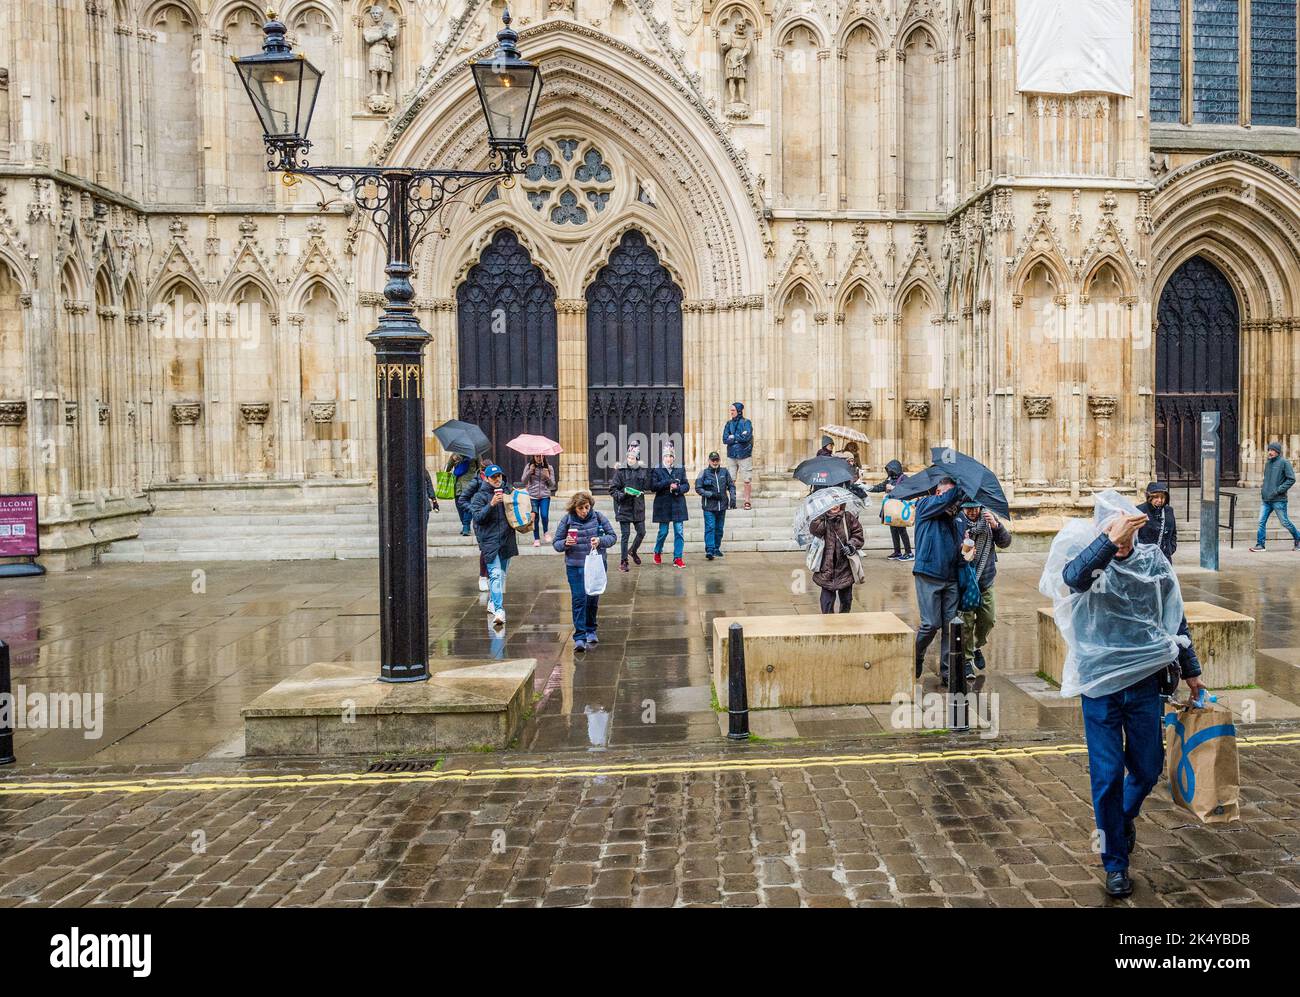 Les touristes et les visiteurs se protègent de la pluie en utilisant des parasols et des manteaux de pluie sur les rues humides près de la cathédrale de York. Banque D'Images